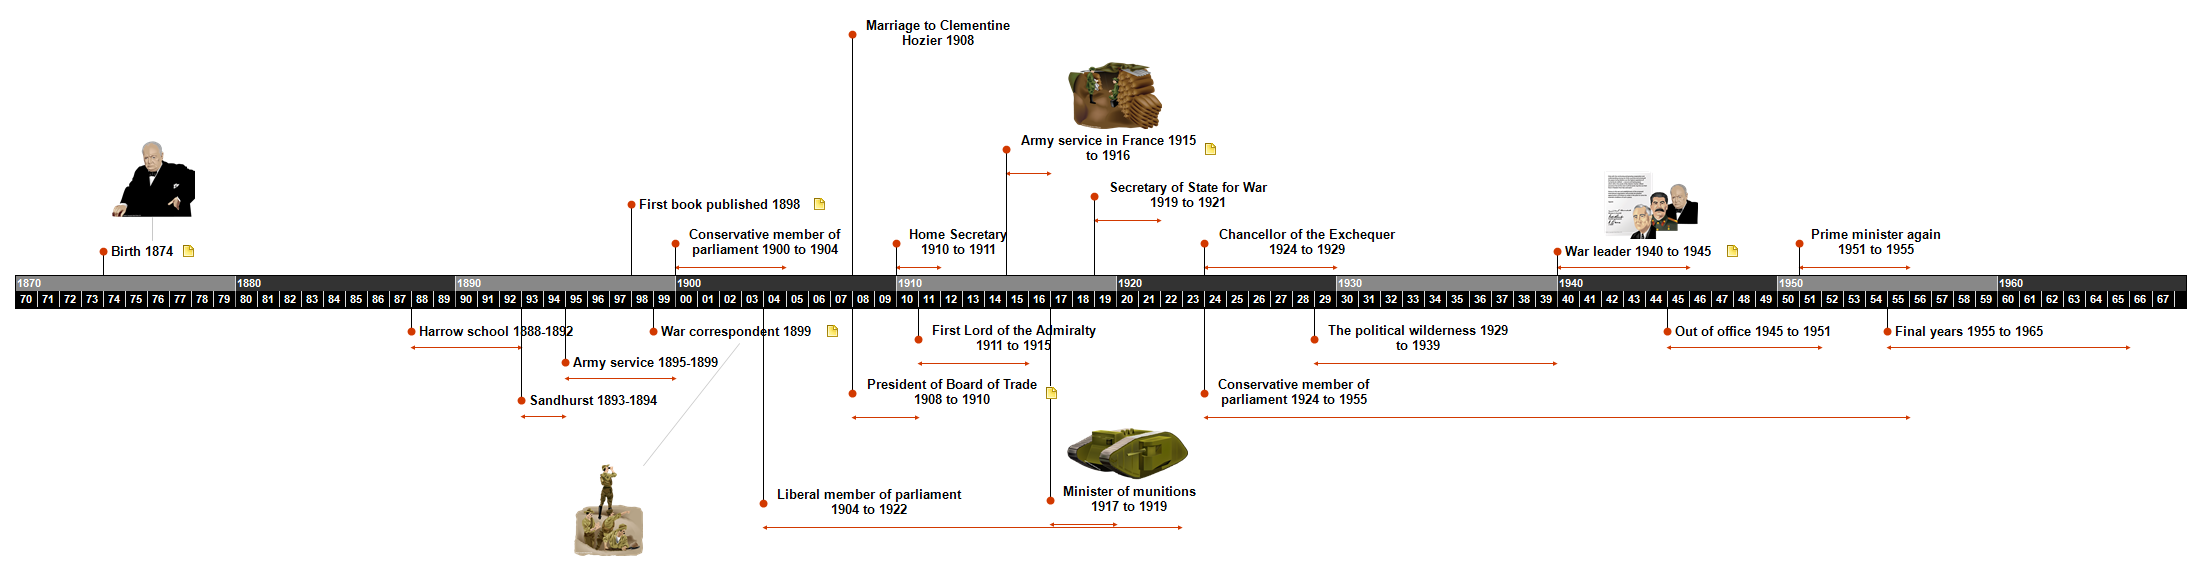 Churchill Timeline